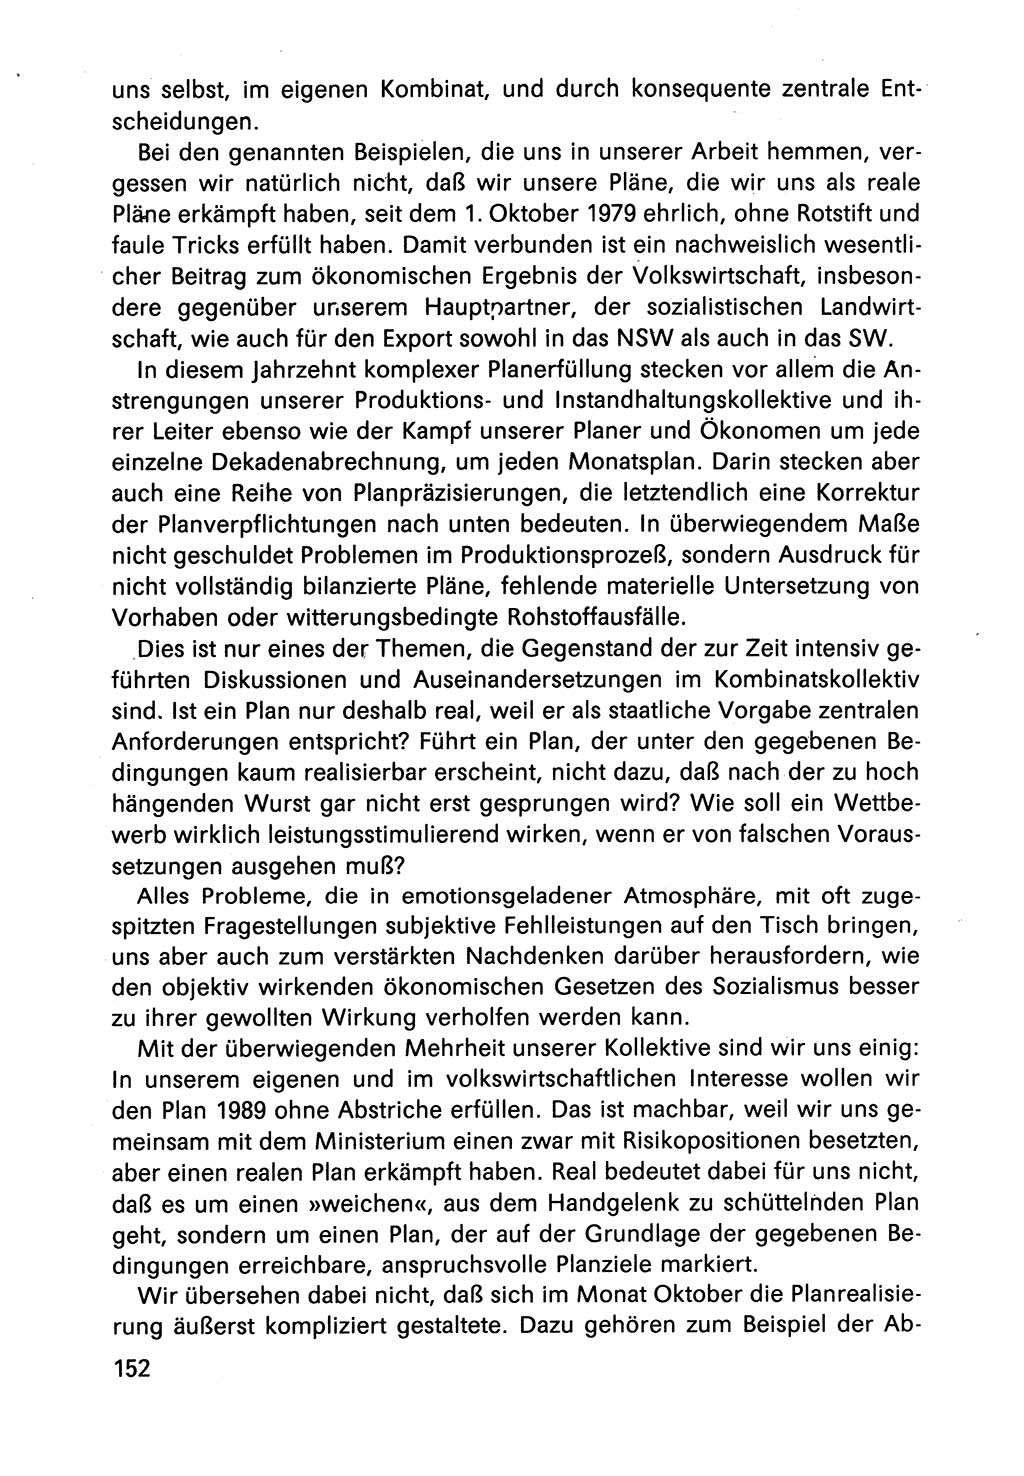 Diskussionsbeiträge, 10. Tagung des ZK (Zentralkomitee) der SED (Sozialistische Einheitspartei Deutschlands) [Deutsche Demokratische Republik (DDR)] 1989, Seite 152 (Disk.-Beitr. 10. Tg. ZK SED DDR 1989, S. 152)